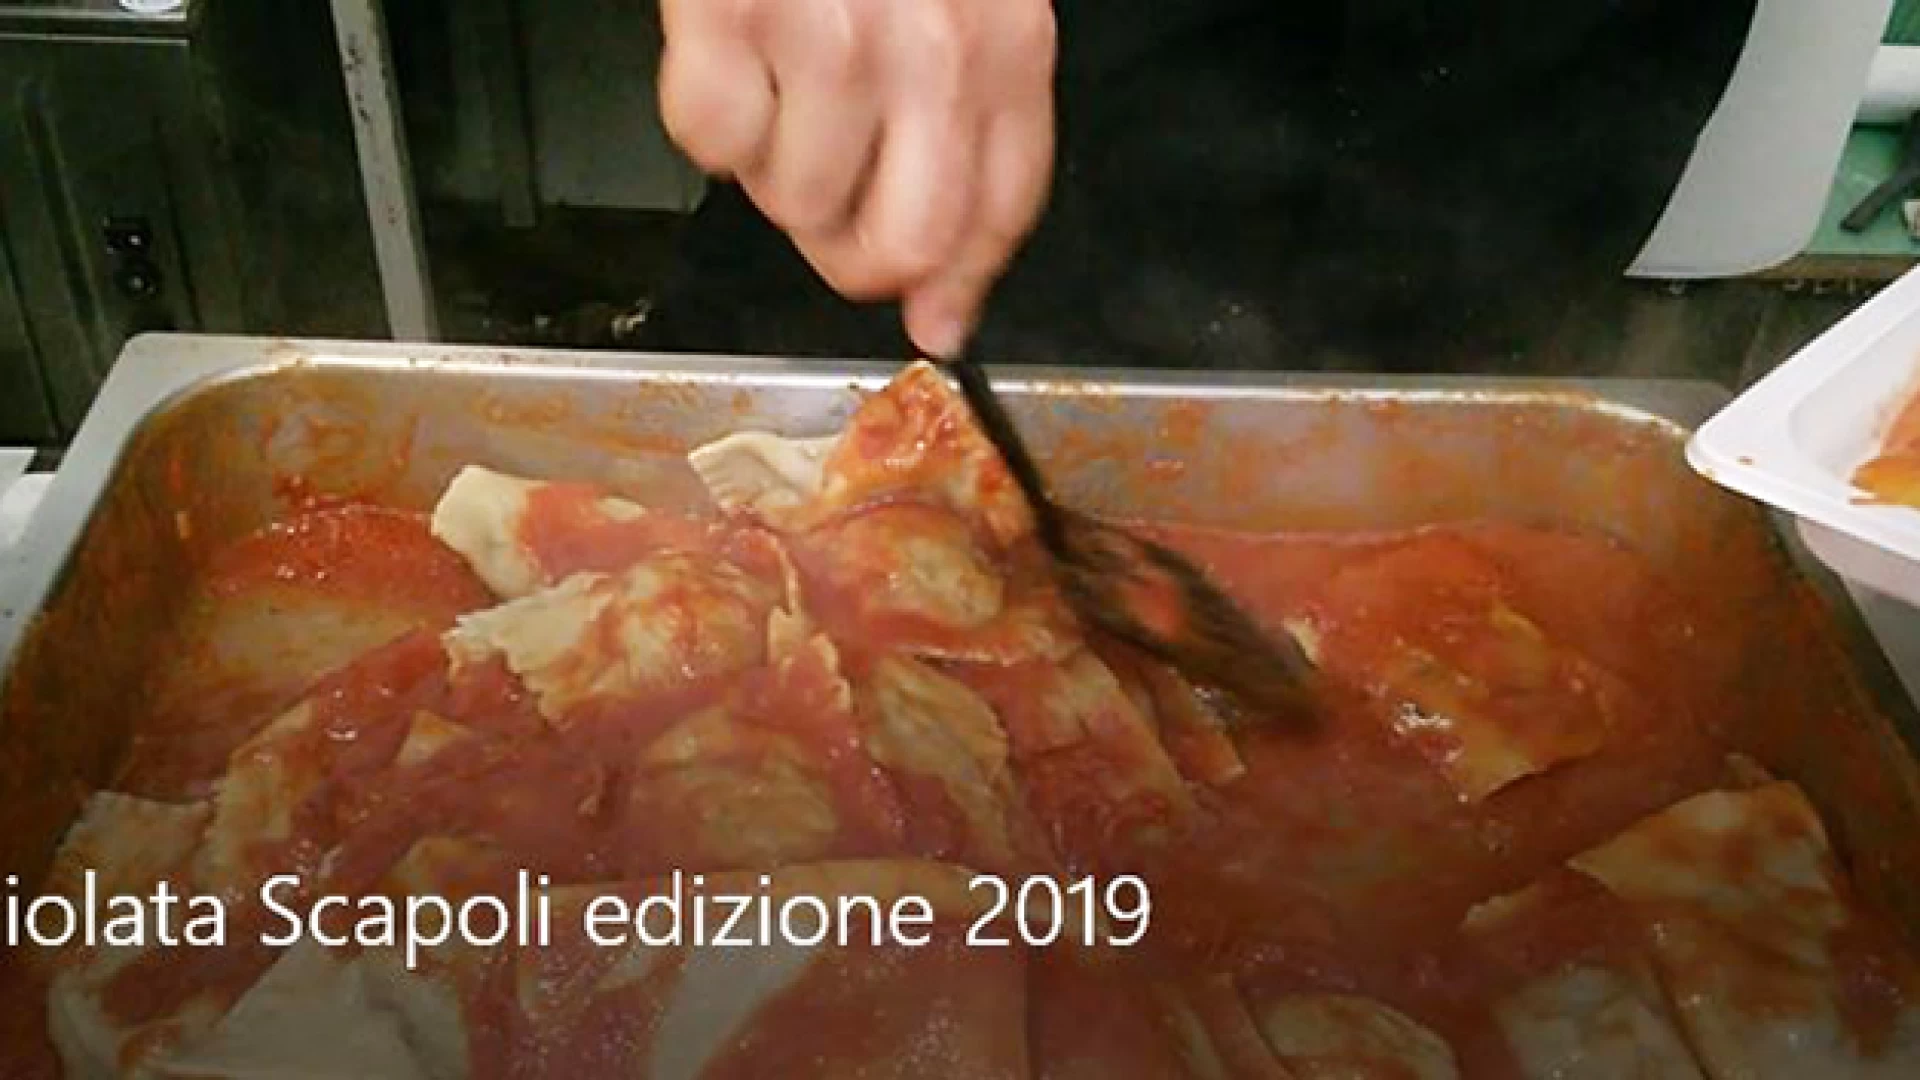 Scapoli, ravioli di gusto e tutto esaurito all’edizione 2019 della Raviolata. Il piatto tipico attira turisti e buongustai. Guarda il nostro servizio video.